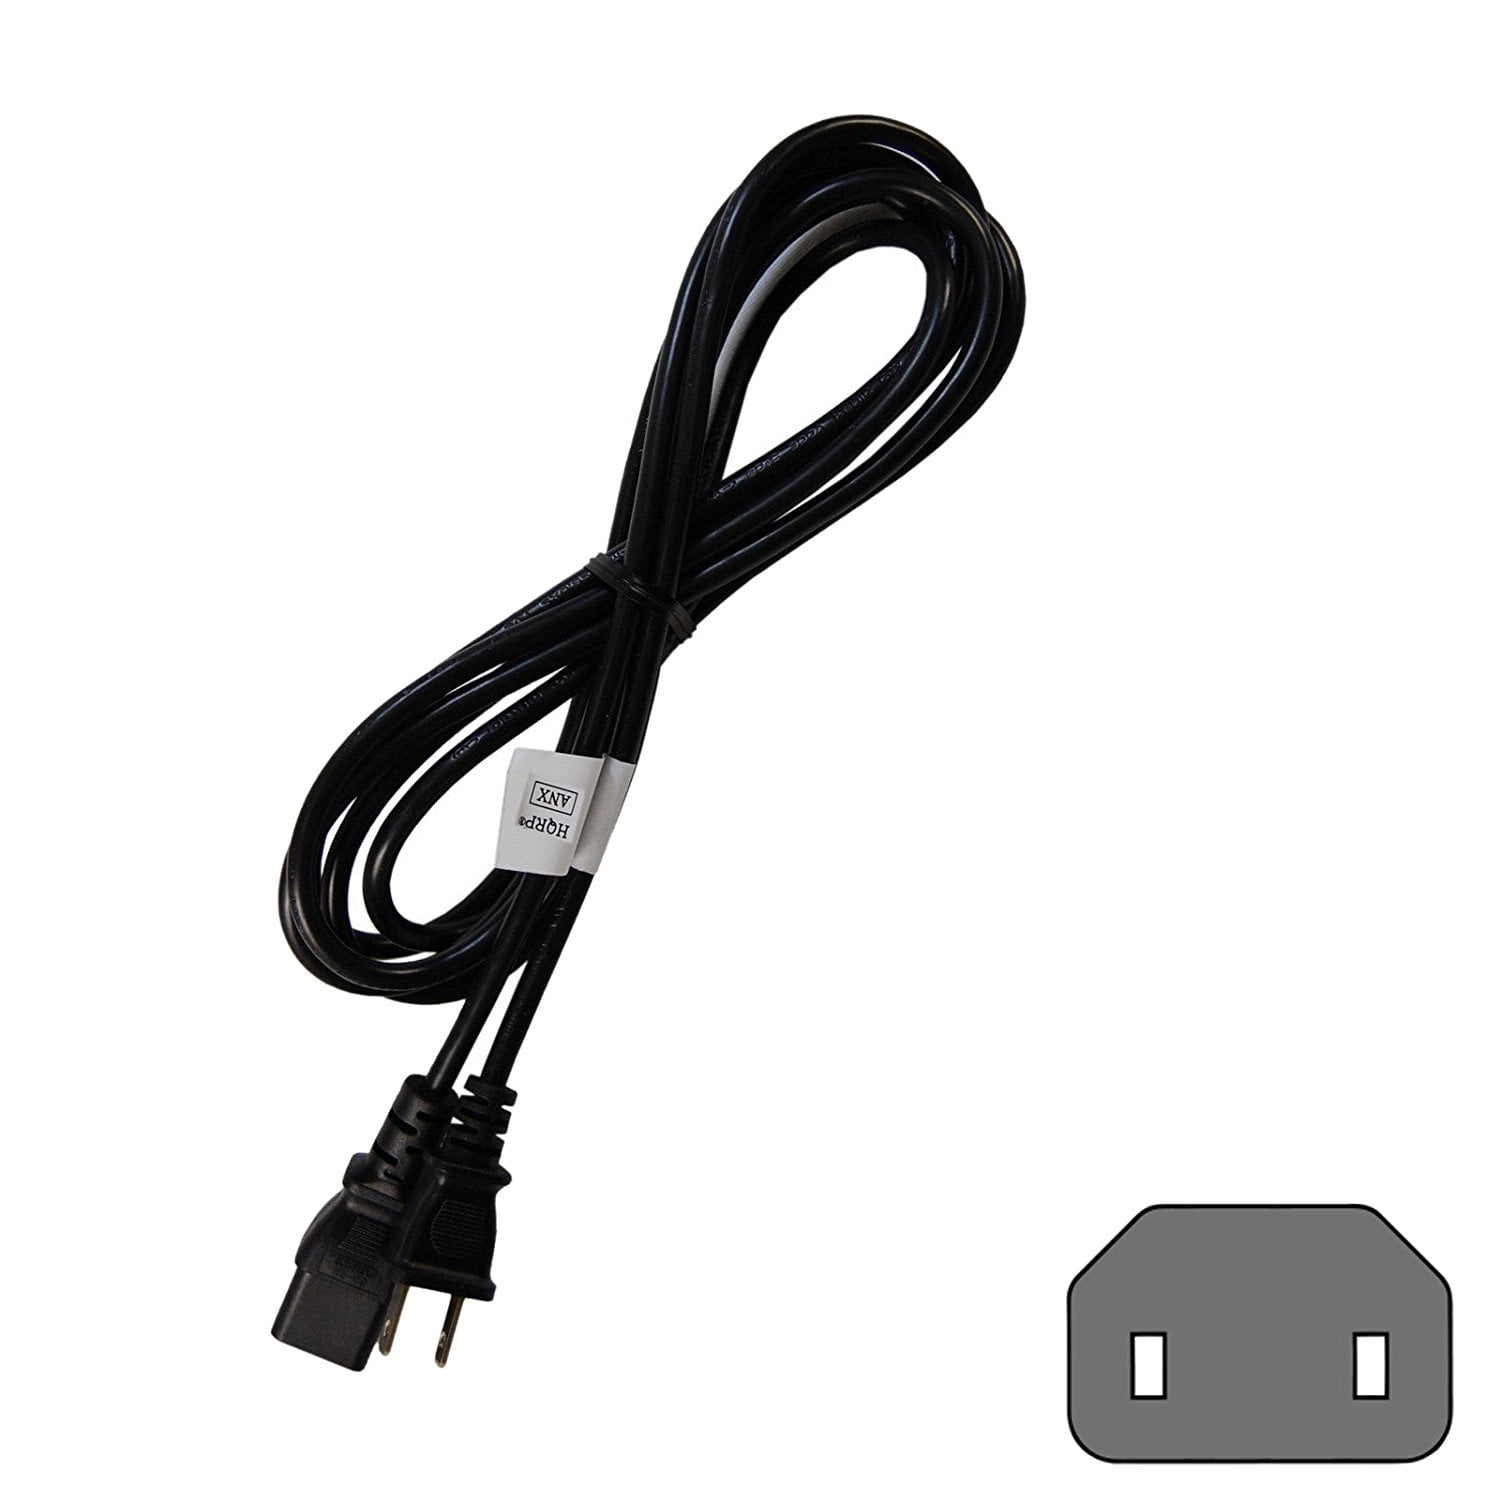 SoDo Tek TM 6 FT 3 Prong AC Power Cord Cable Plug for Sony KDL-52V4100 TV